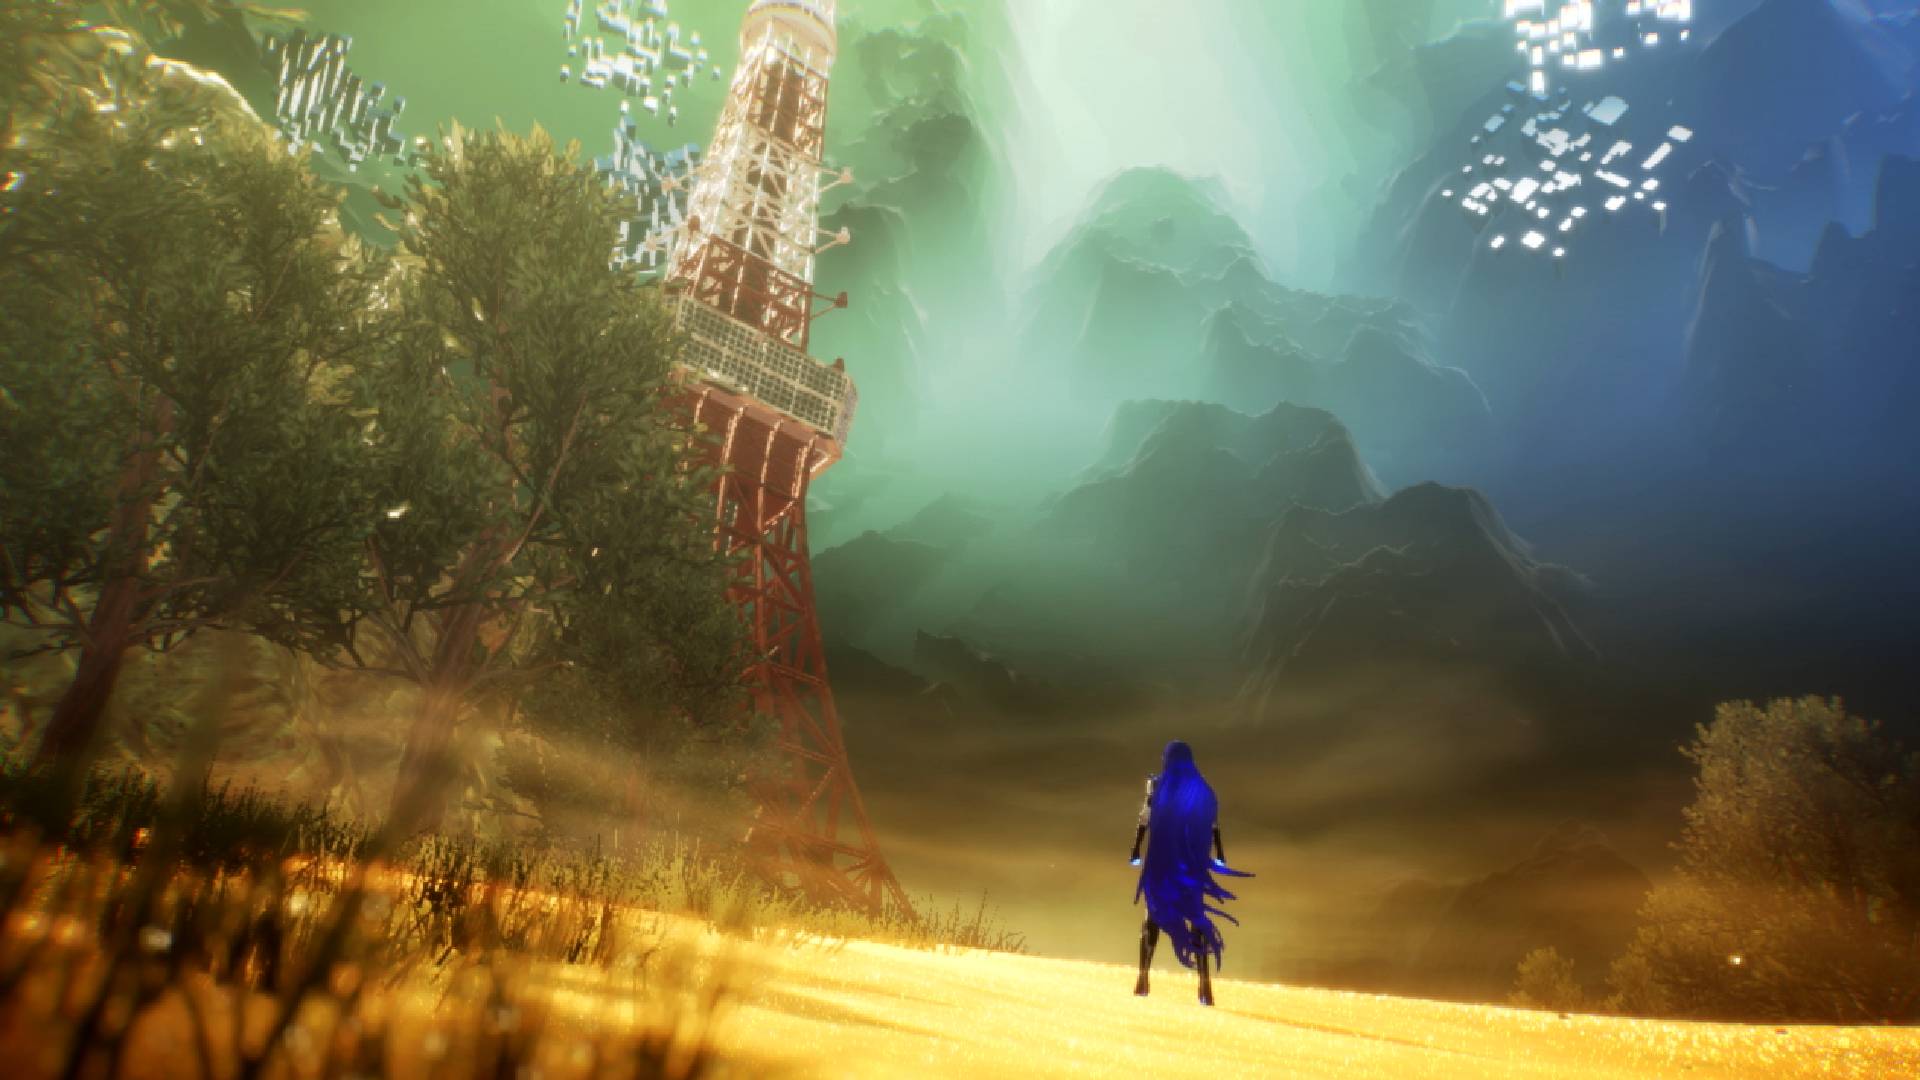 最高のポスト黙示録的なゲーム。 長い青い髪のキャラクターが、砂が地面を覆い、その前の雲を貫く背の高い構造物の残骸がある人けのないエリアを見渡しています。